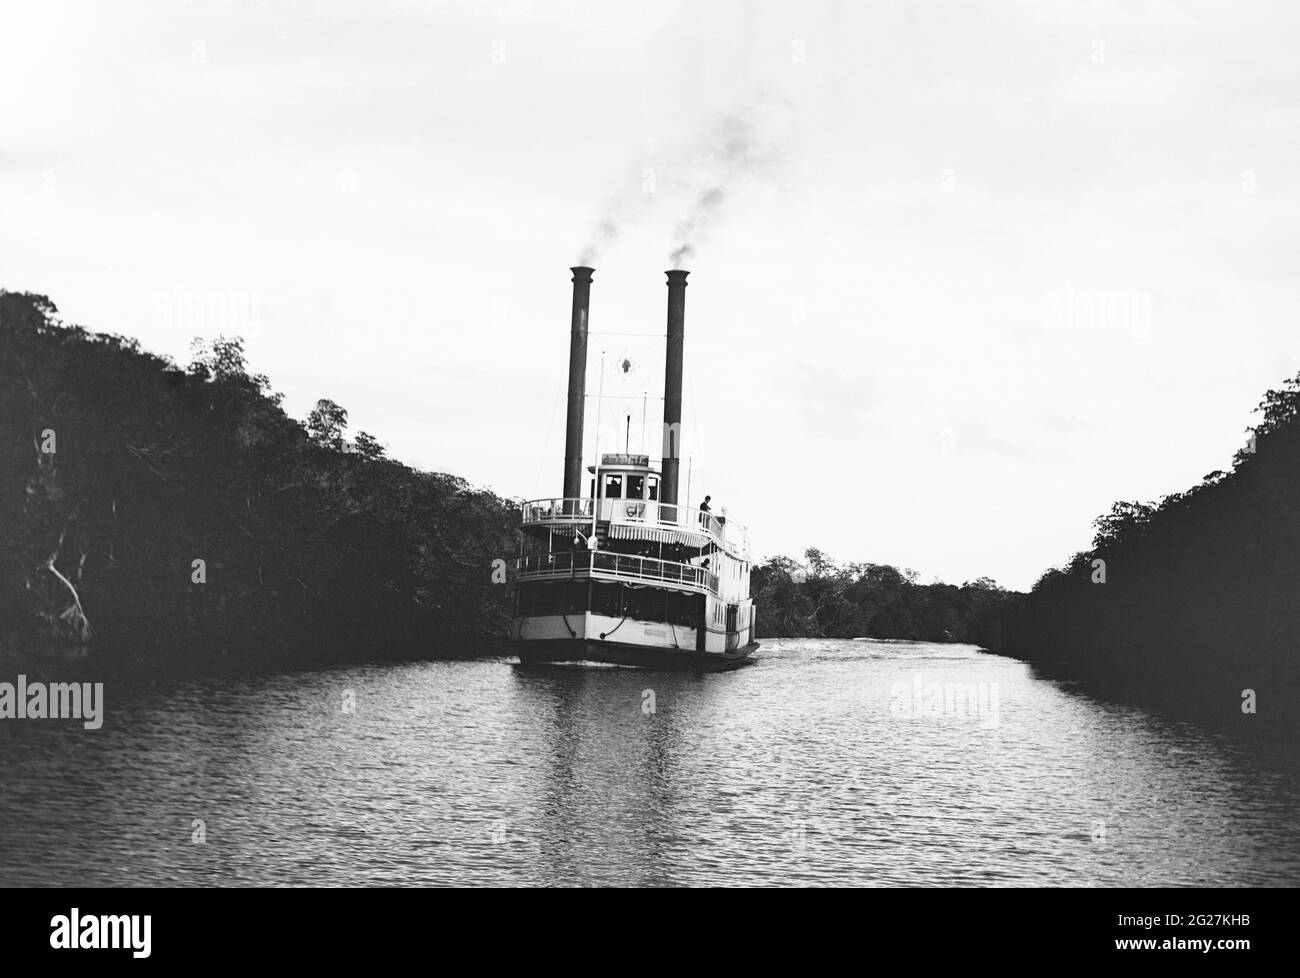 El barco de vapor St. Lucie viaja a través de las vías fluviales del centro de Florida, alrededor de 1890. Foto de stock